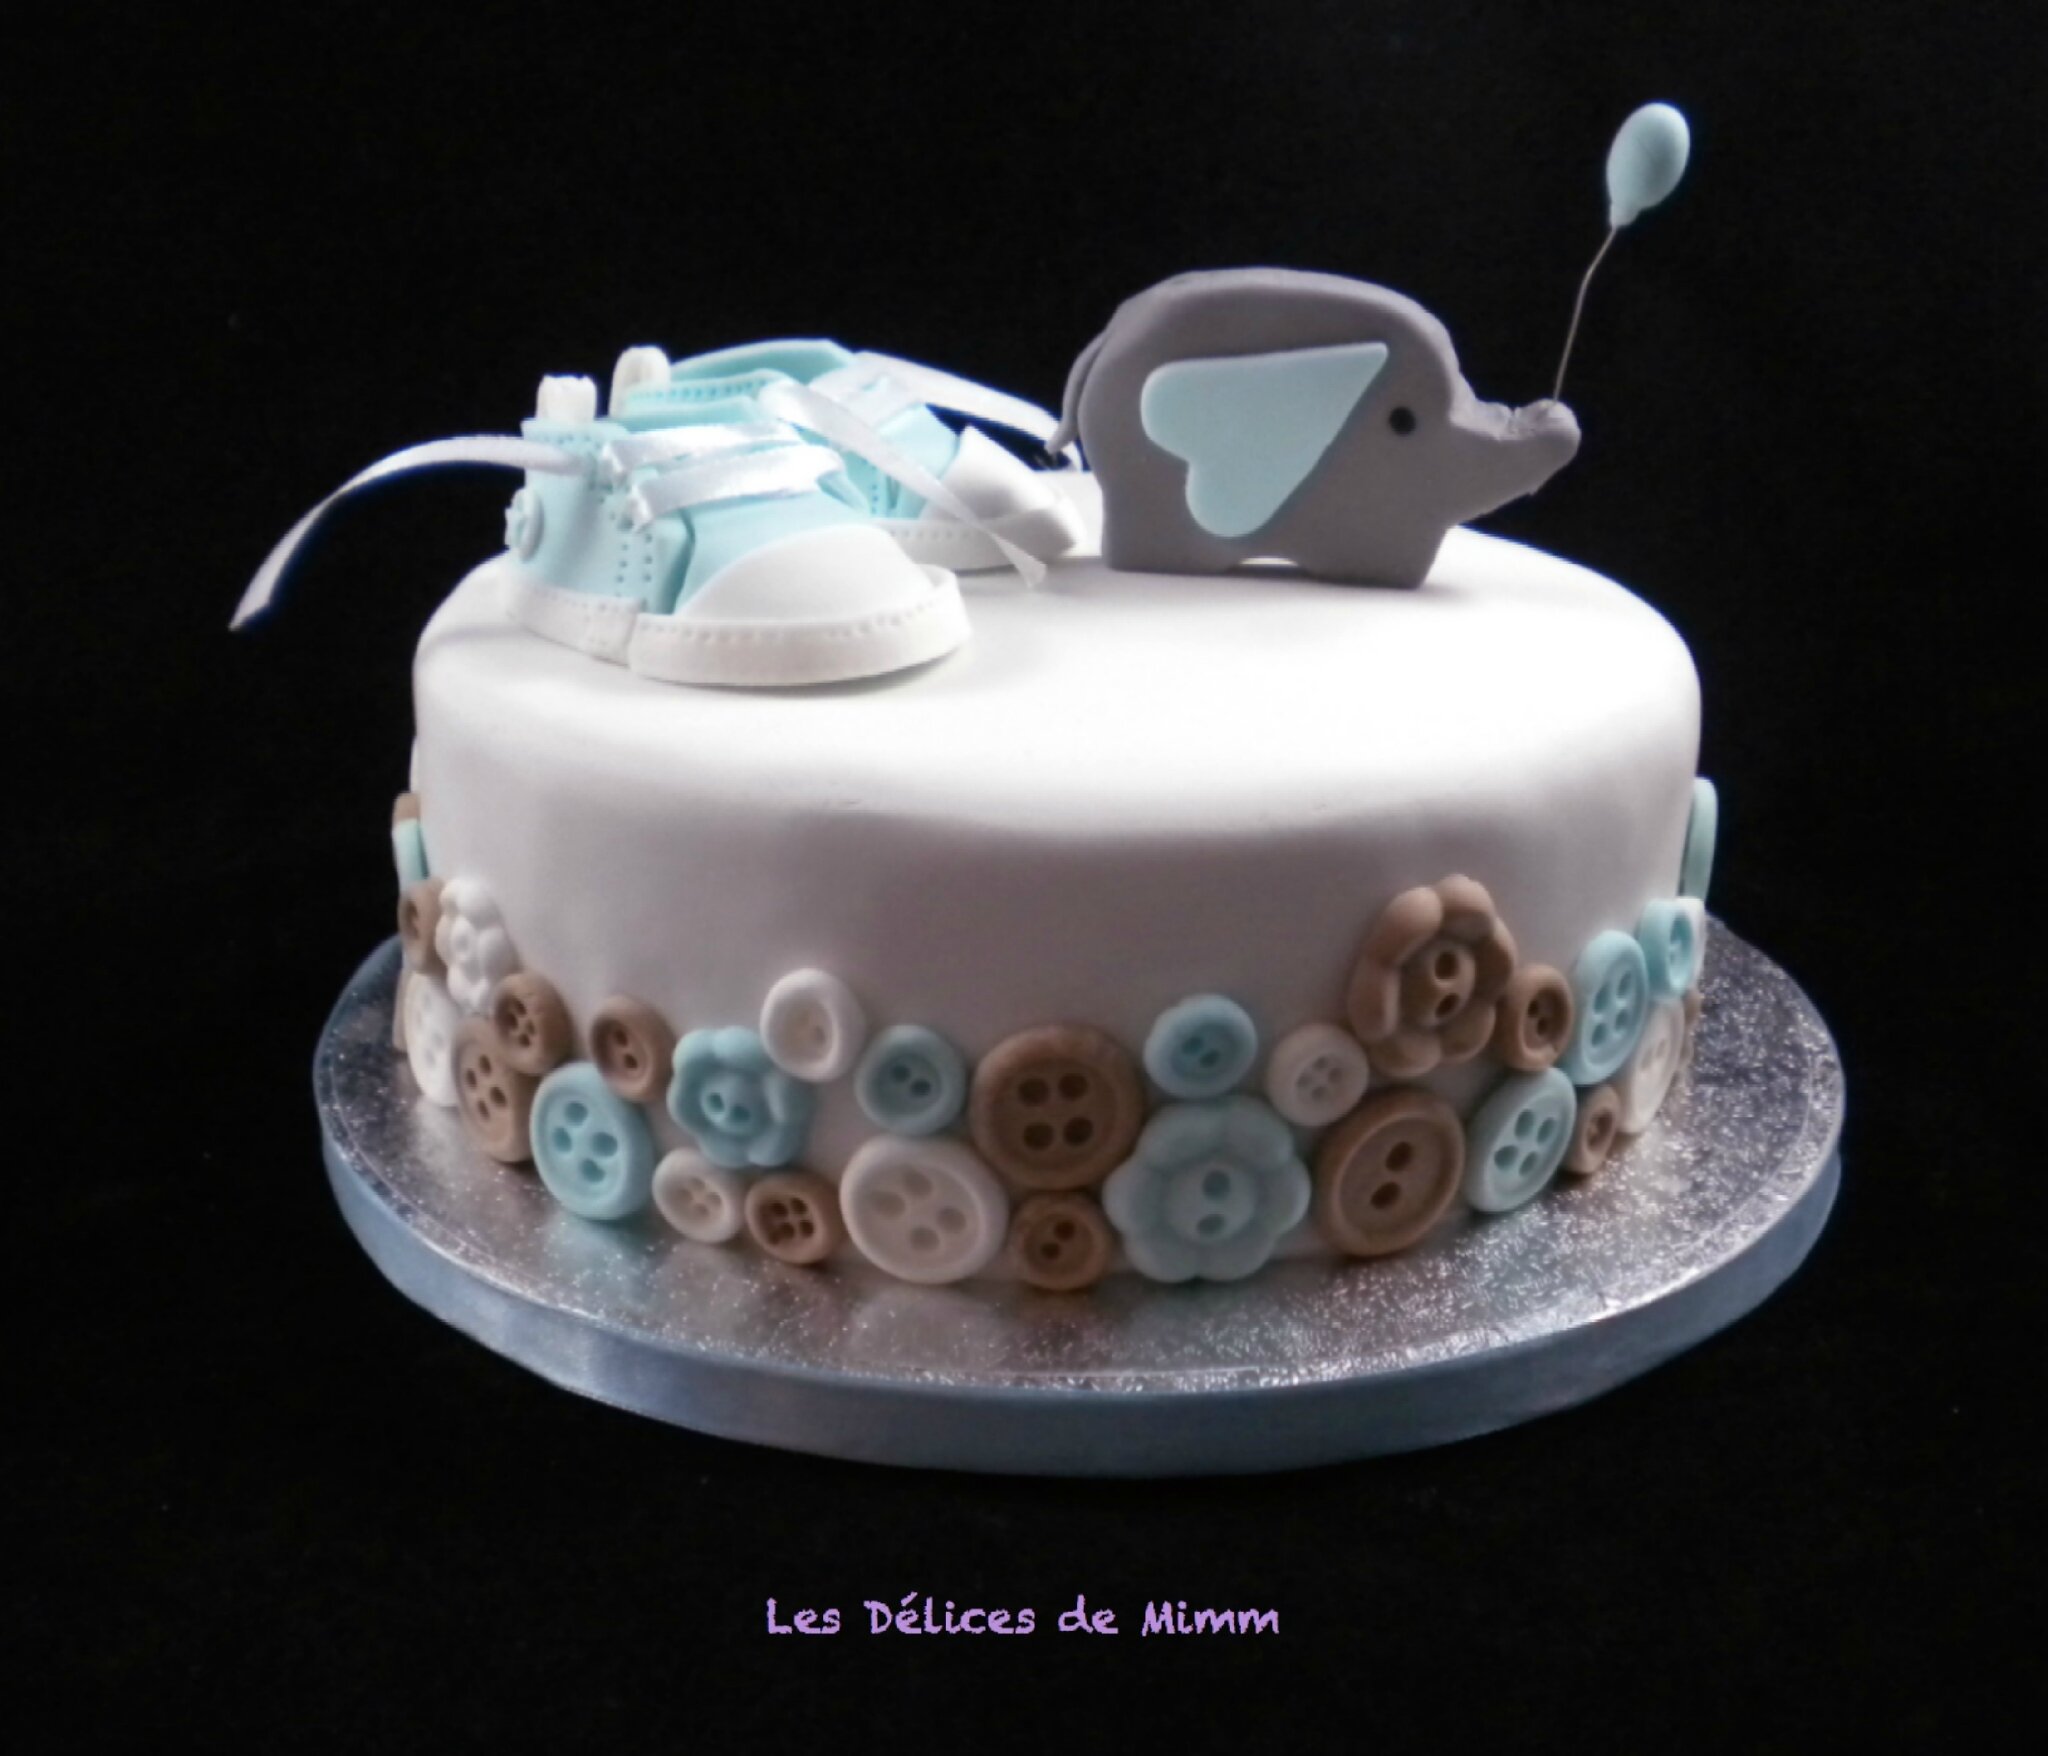 Un Sponge Cake Pour Diabetique Pour Ce Baby Shower Cake Les Delices De Mimm